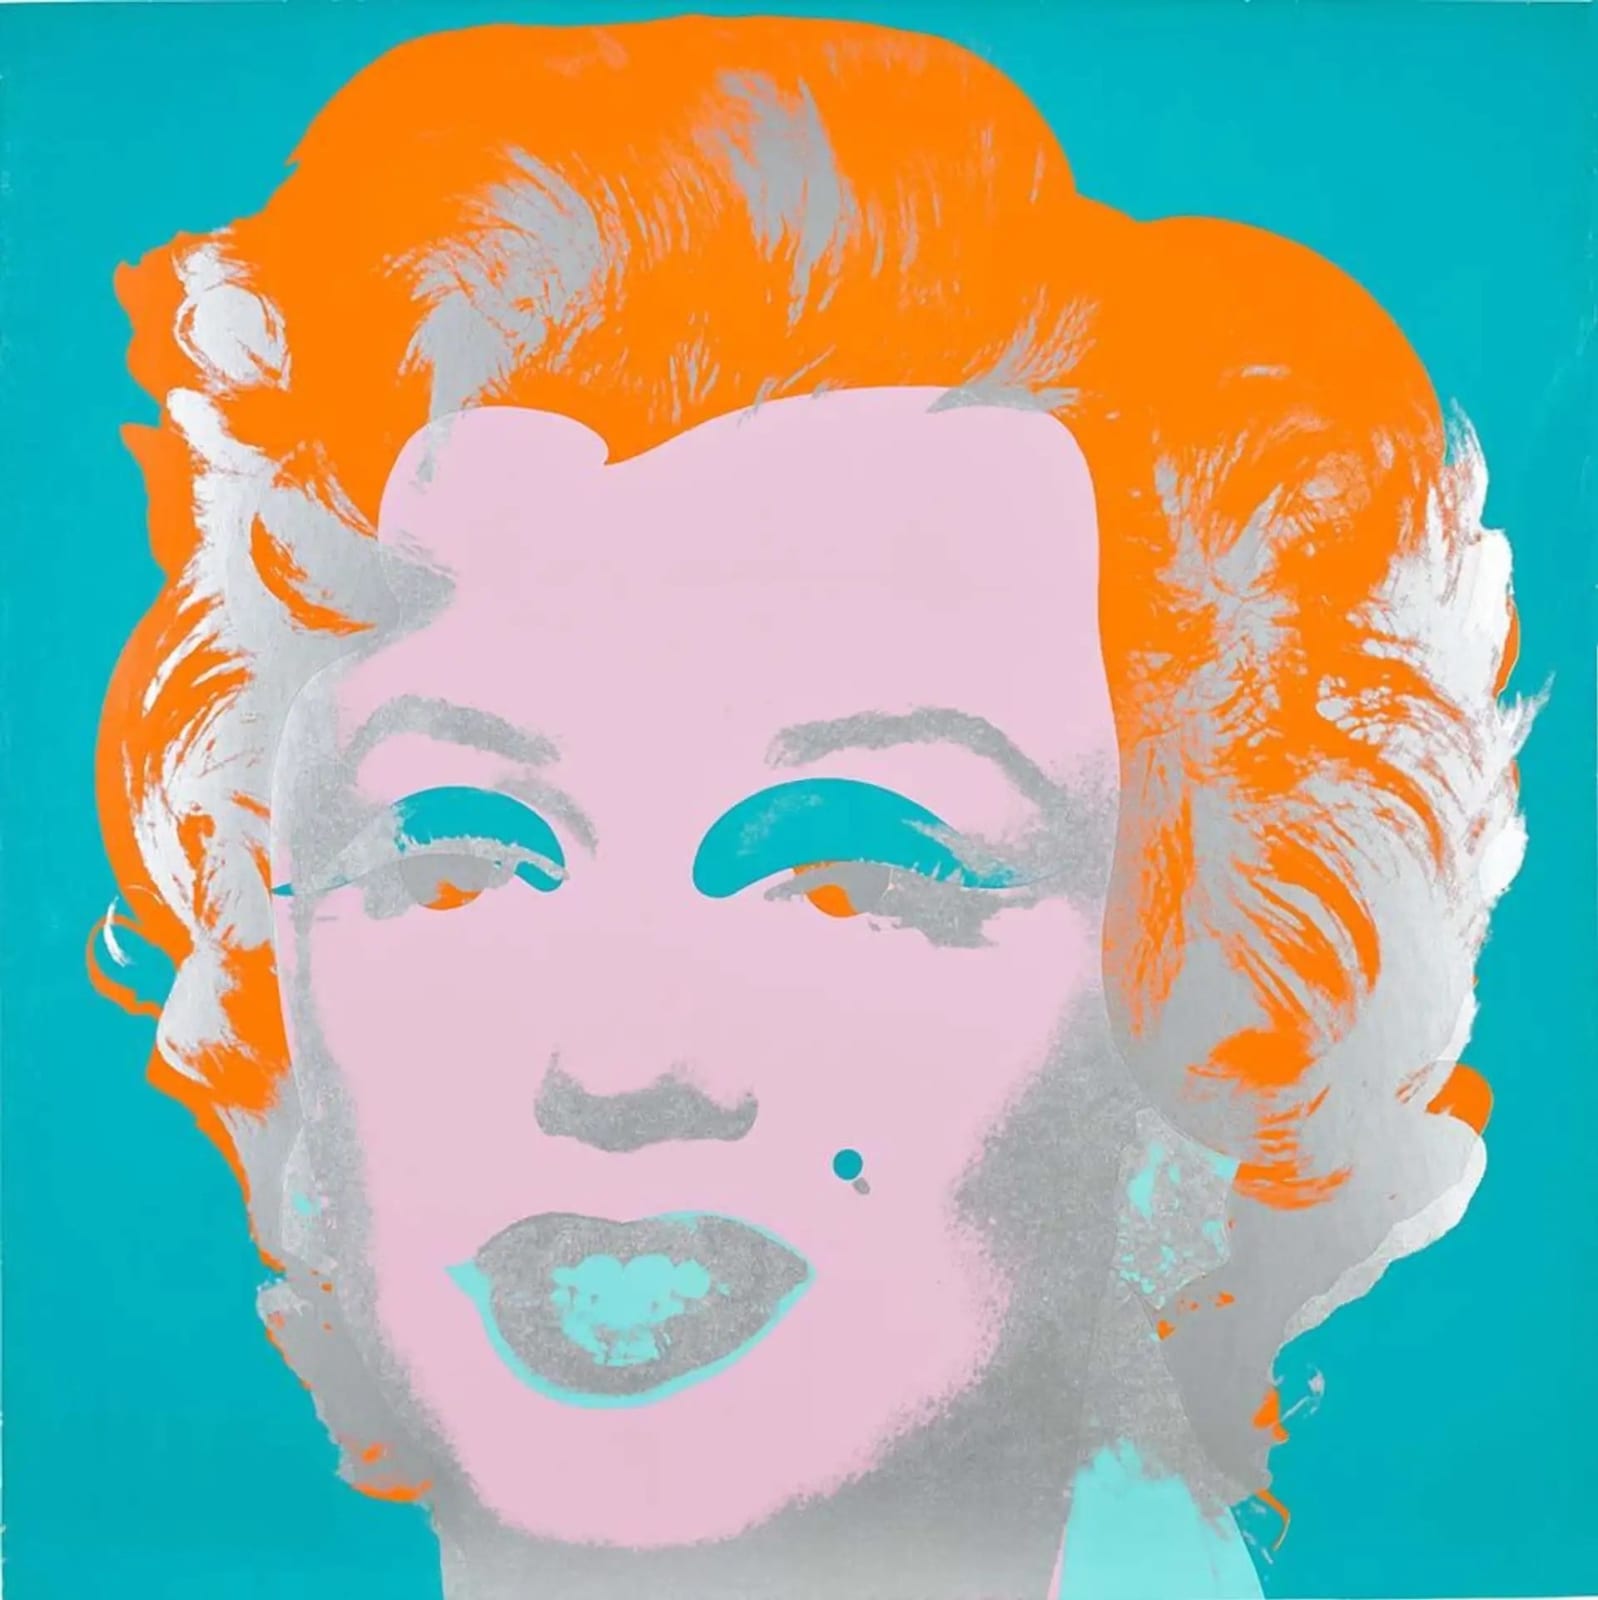 Andy Warhol, Marilyn Monroe F.S. II 29, 1967 | Guy Hepner